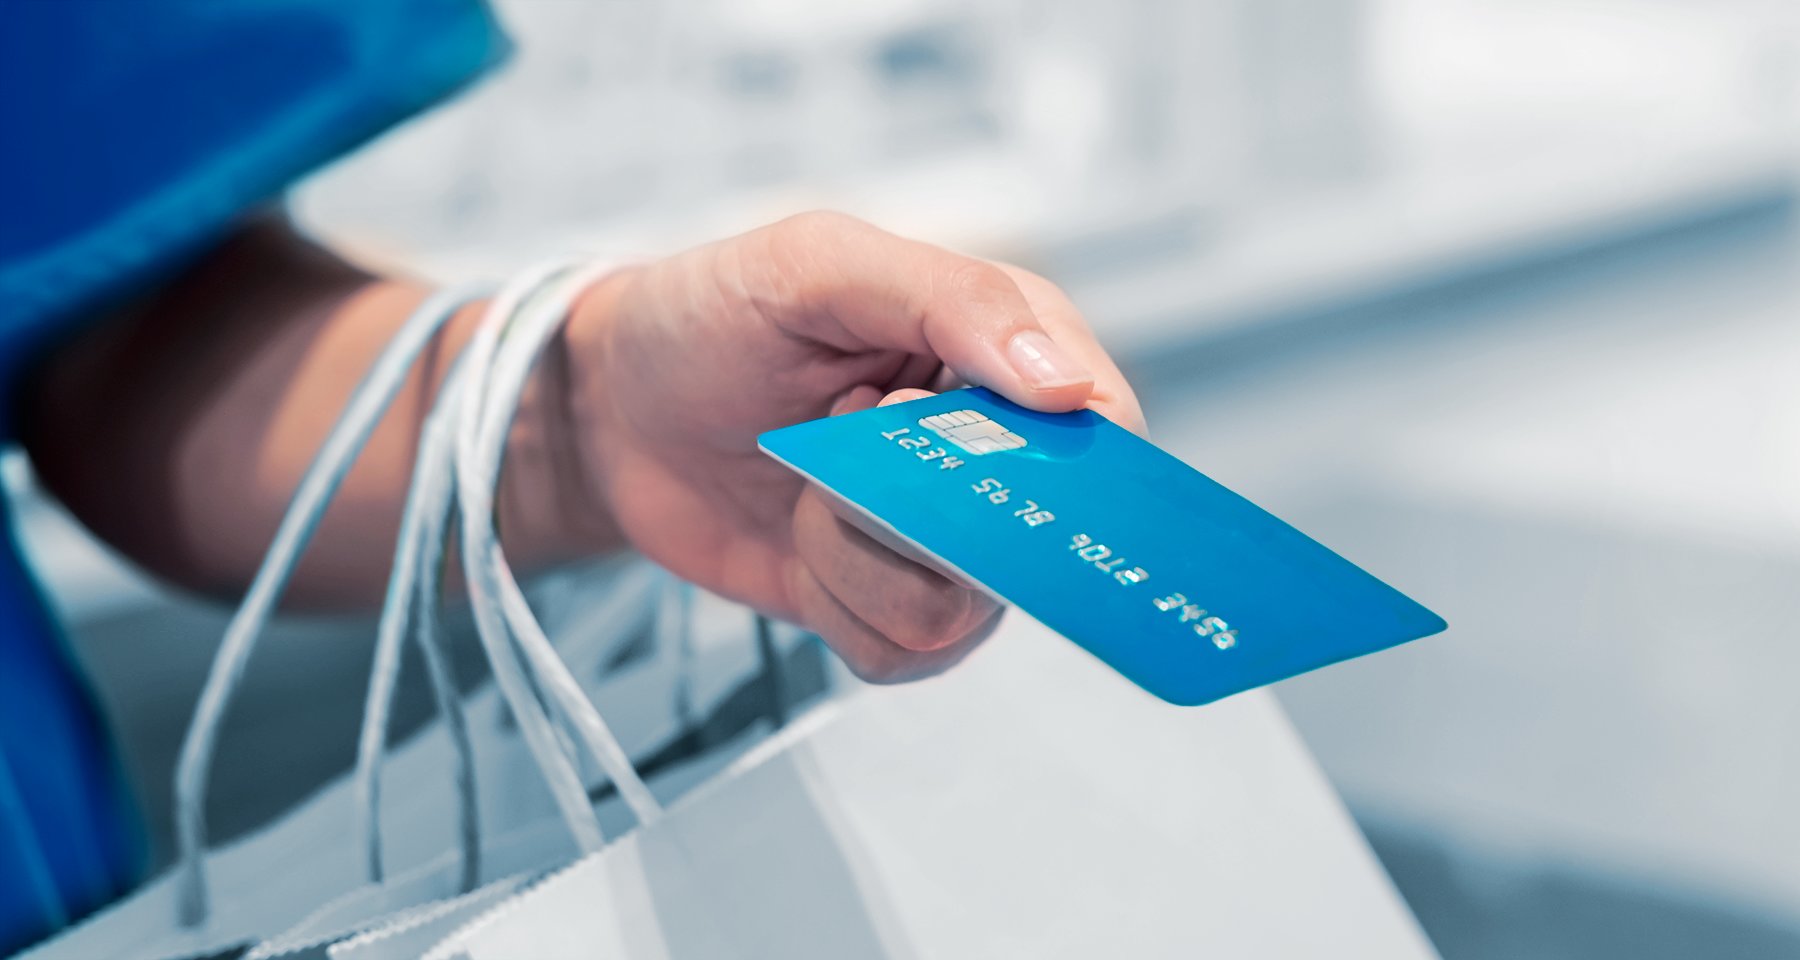 Как правильно пользоваться кредитной картой, как платить кредиткой с  выгодой и без процентов: советы и лайфхаки | Банки.ру